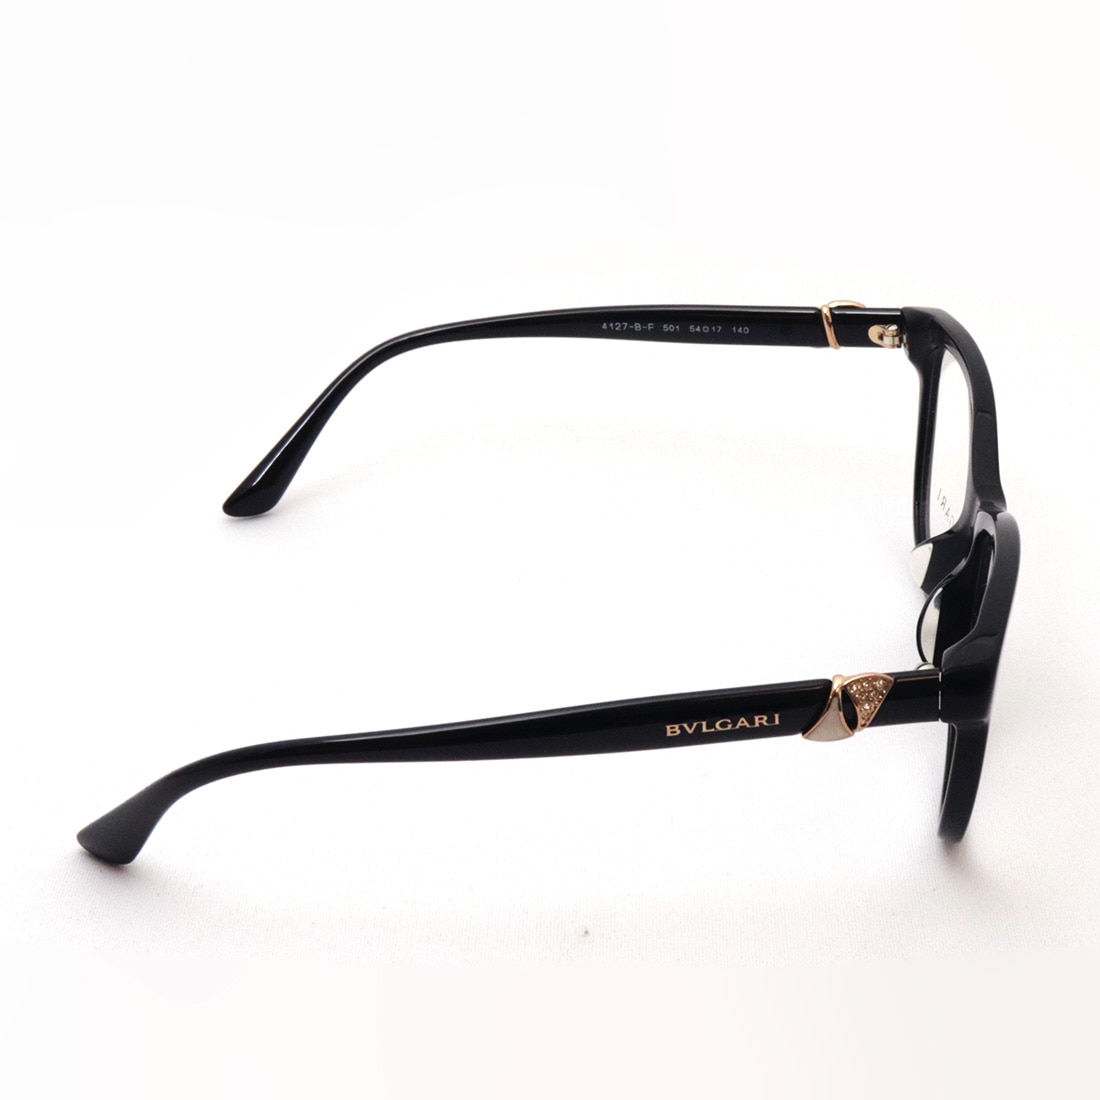 商品仕様BVLGARI  ブルガリ3040TD/501メガネ眼鏡メガネフレームブラック